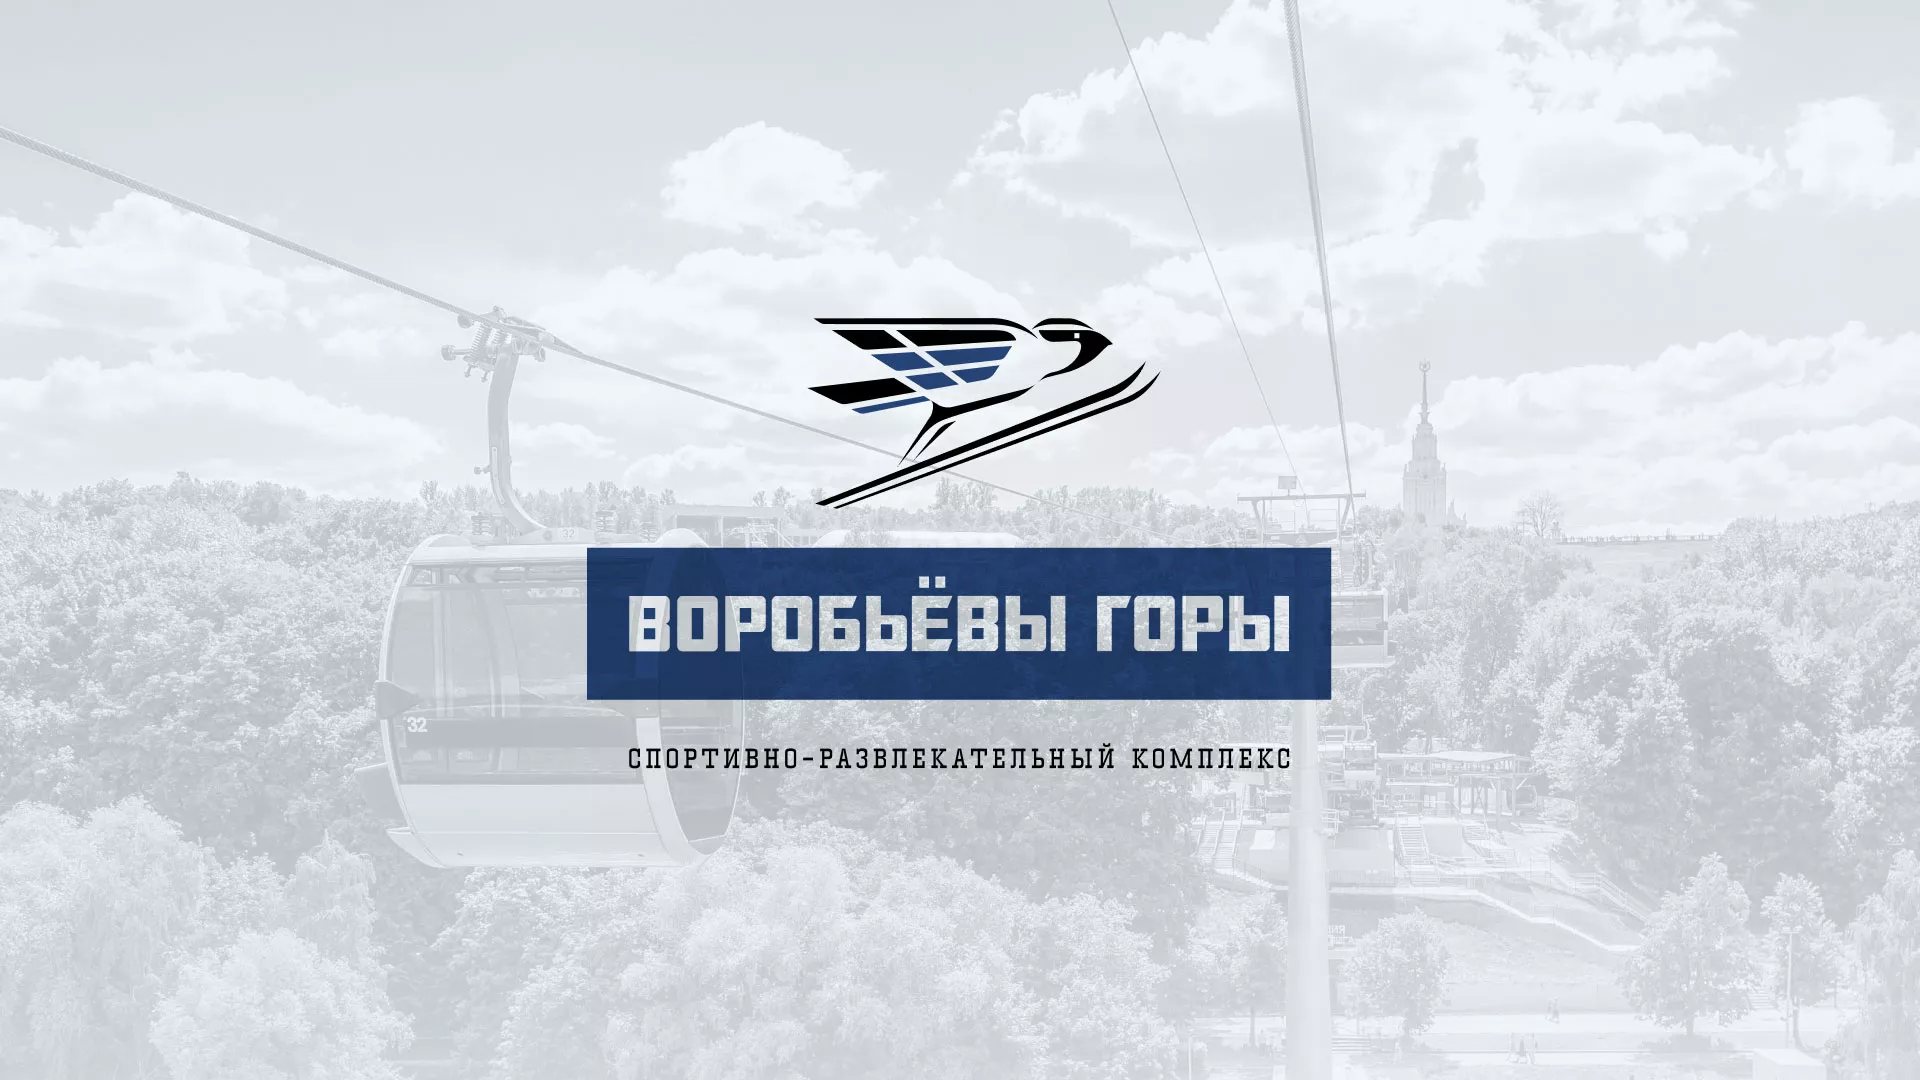 Разработка сайта в Бабушкине для спортивно-развлекательного комплекса «Воробьёвы горы»